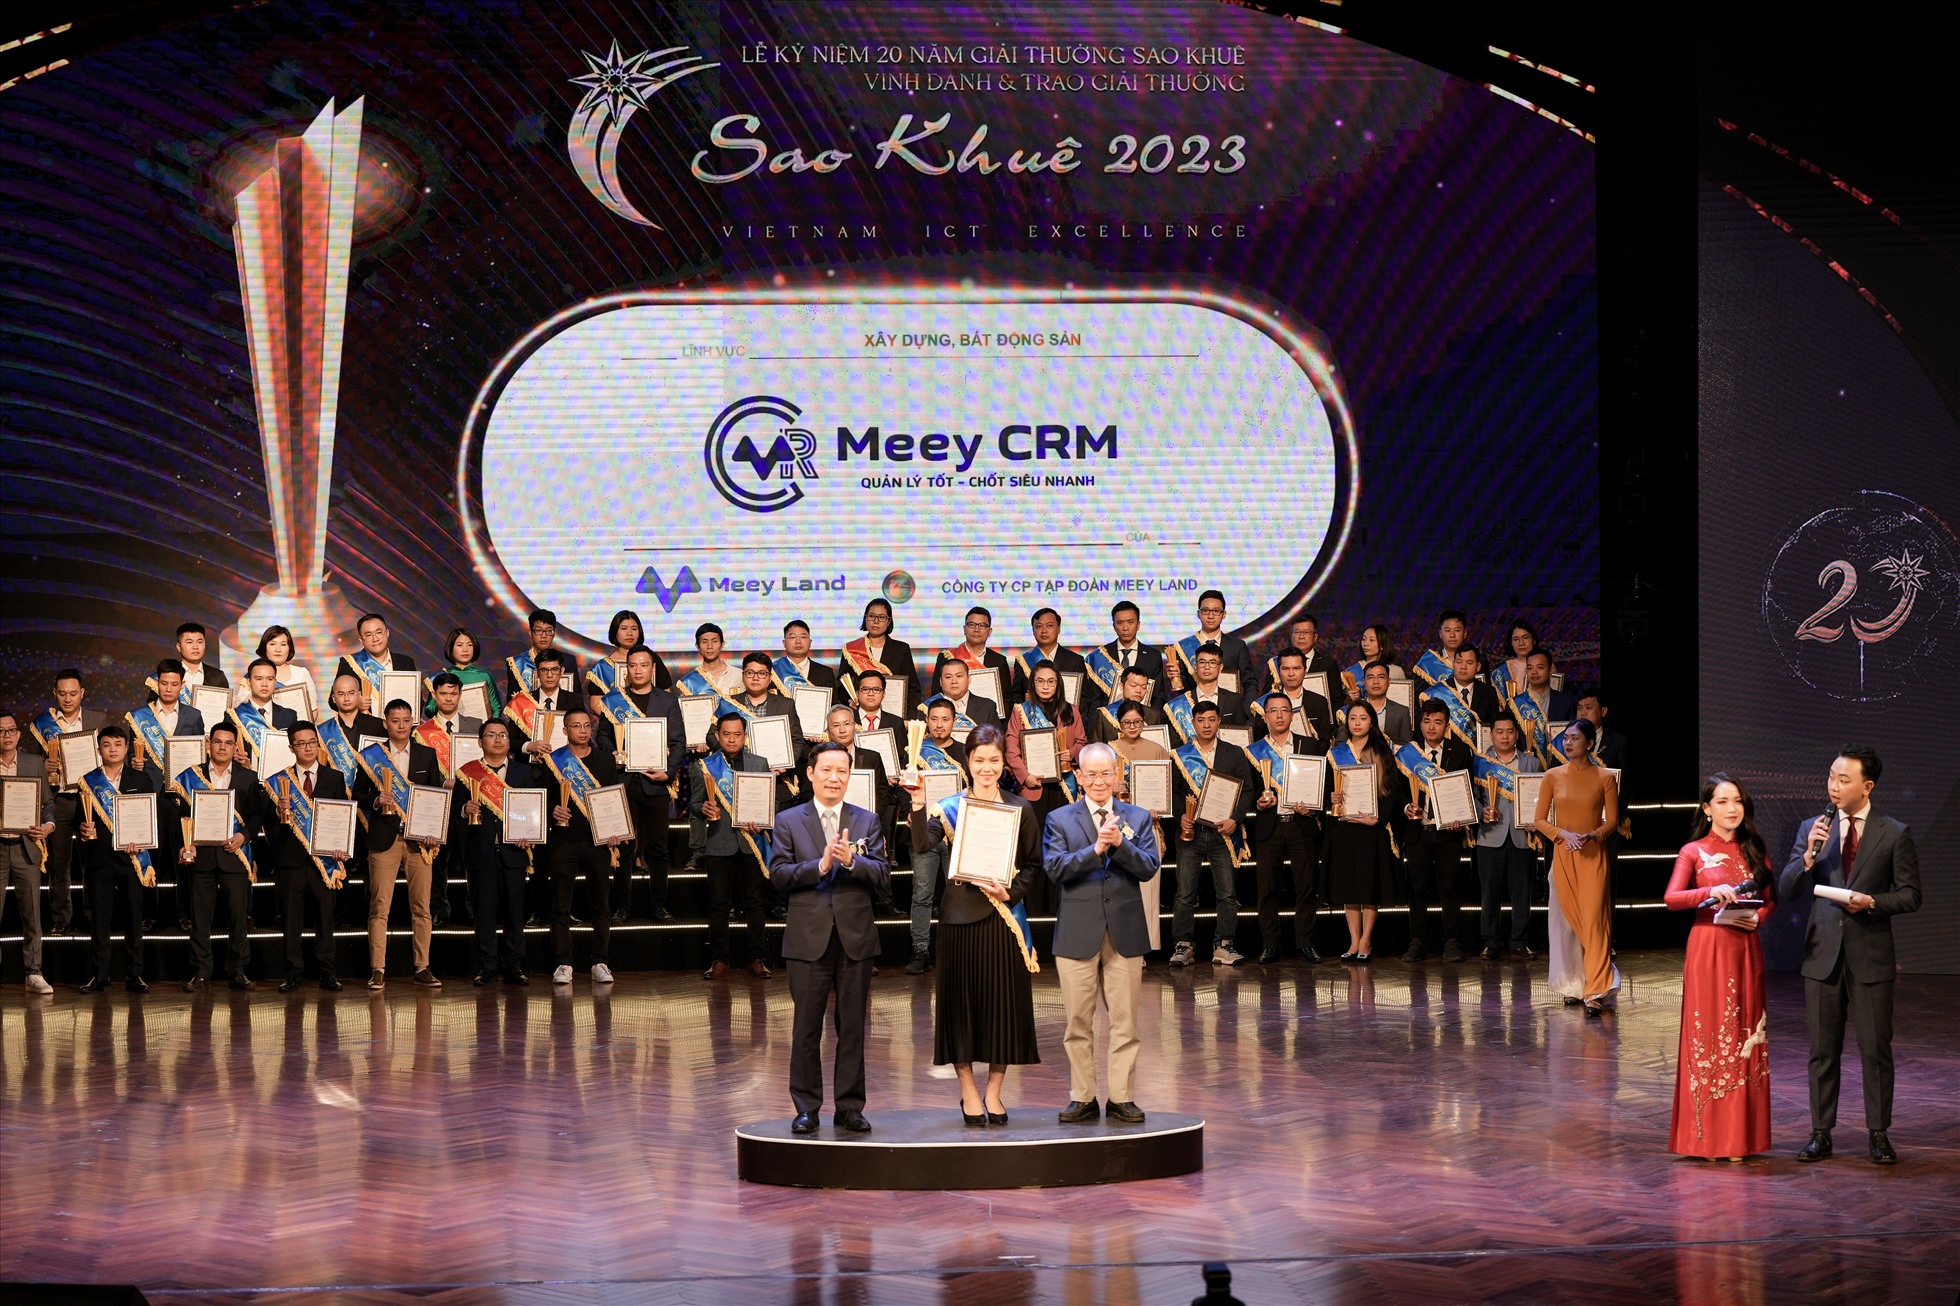 Bà Nguyễn Thị Hồng Hạnh - Trưởng phòng Chính sách sản phẩm Công ty Cổ phần Tập đoàn Meey Land đại diện nhận kỷ niệm chương tại sự kiện. Ảnh: Meey Land.